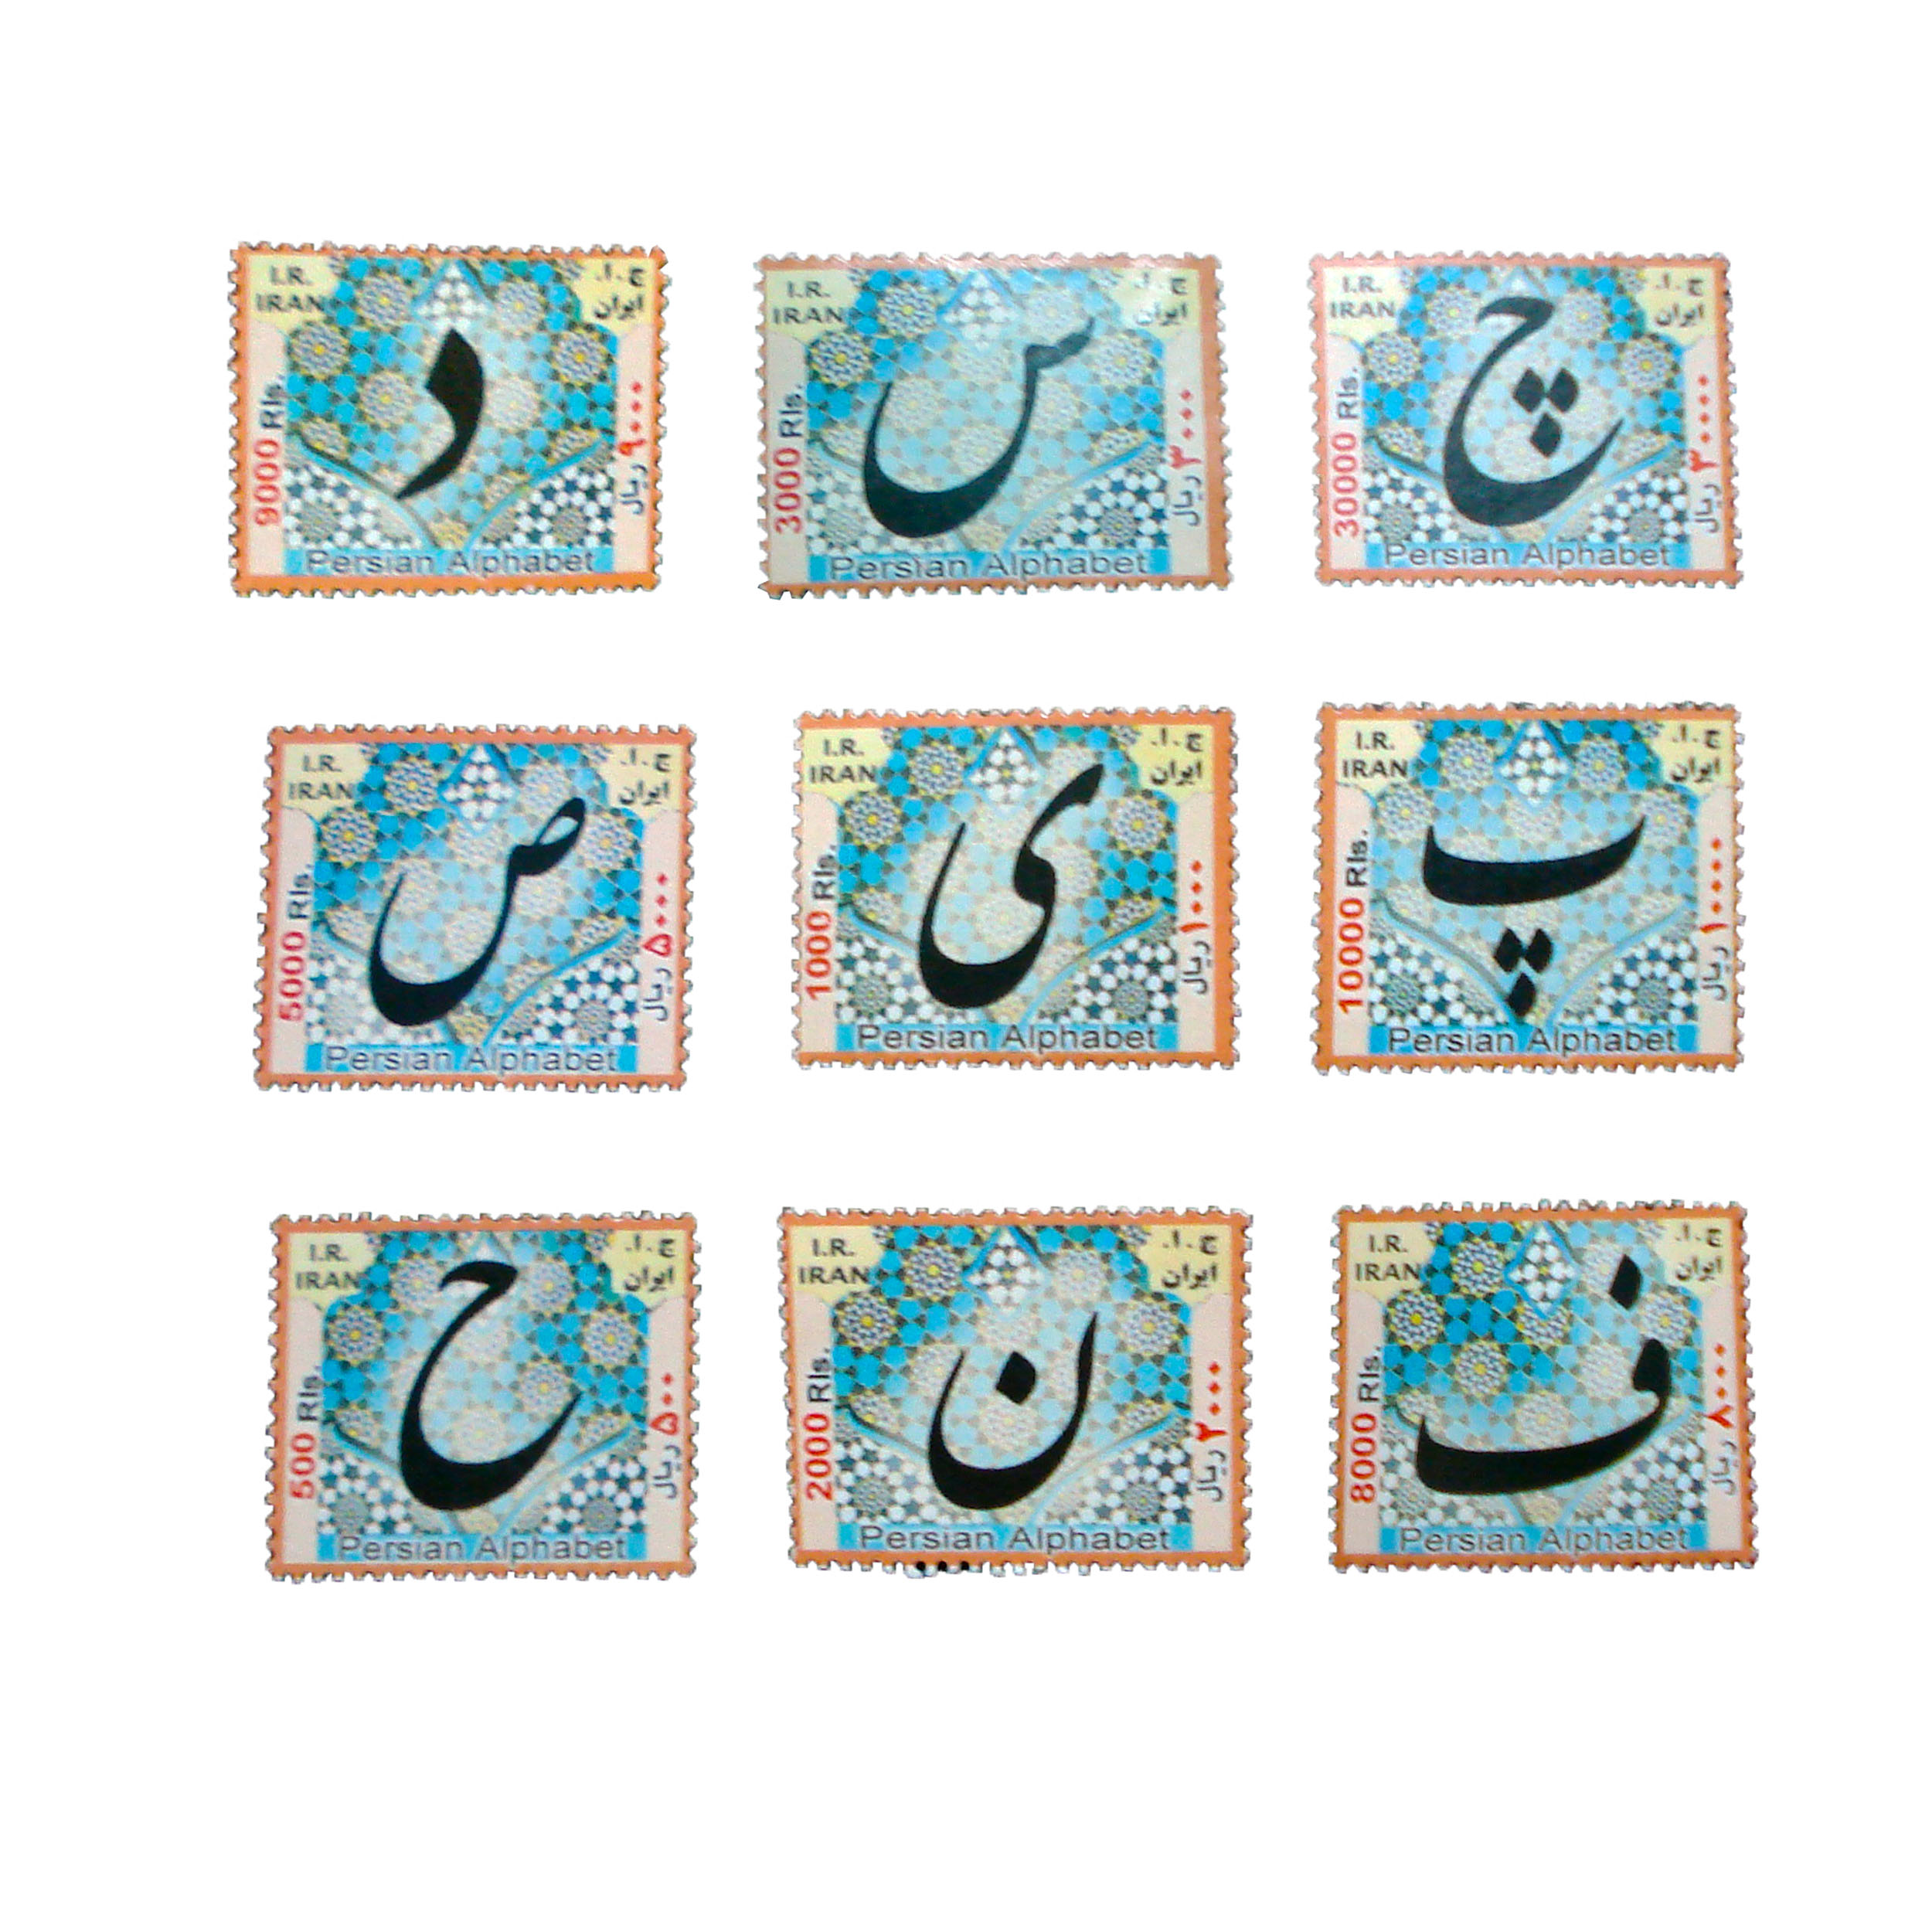 تمبر یادگاری مدل حروف فارسی کد word-770 مجموعه 9 عددی